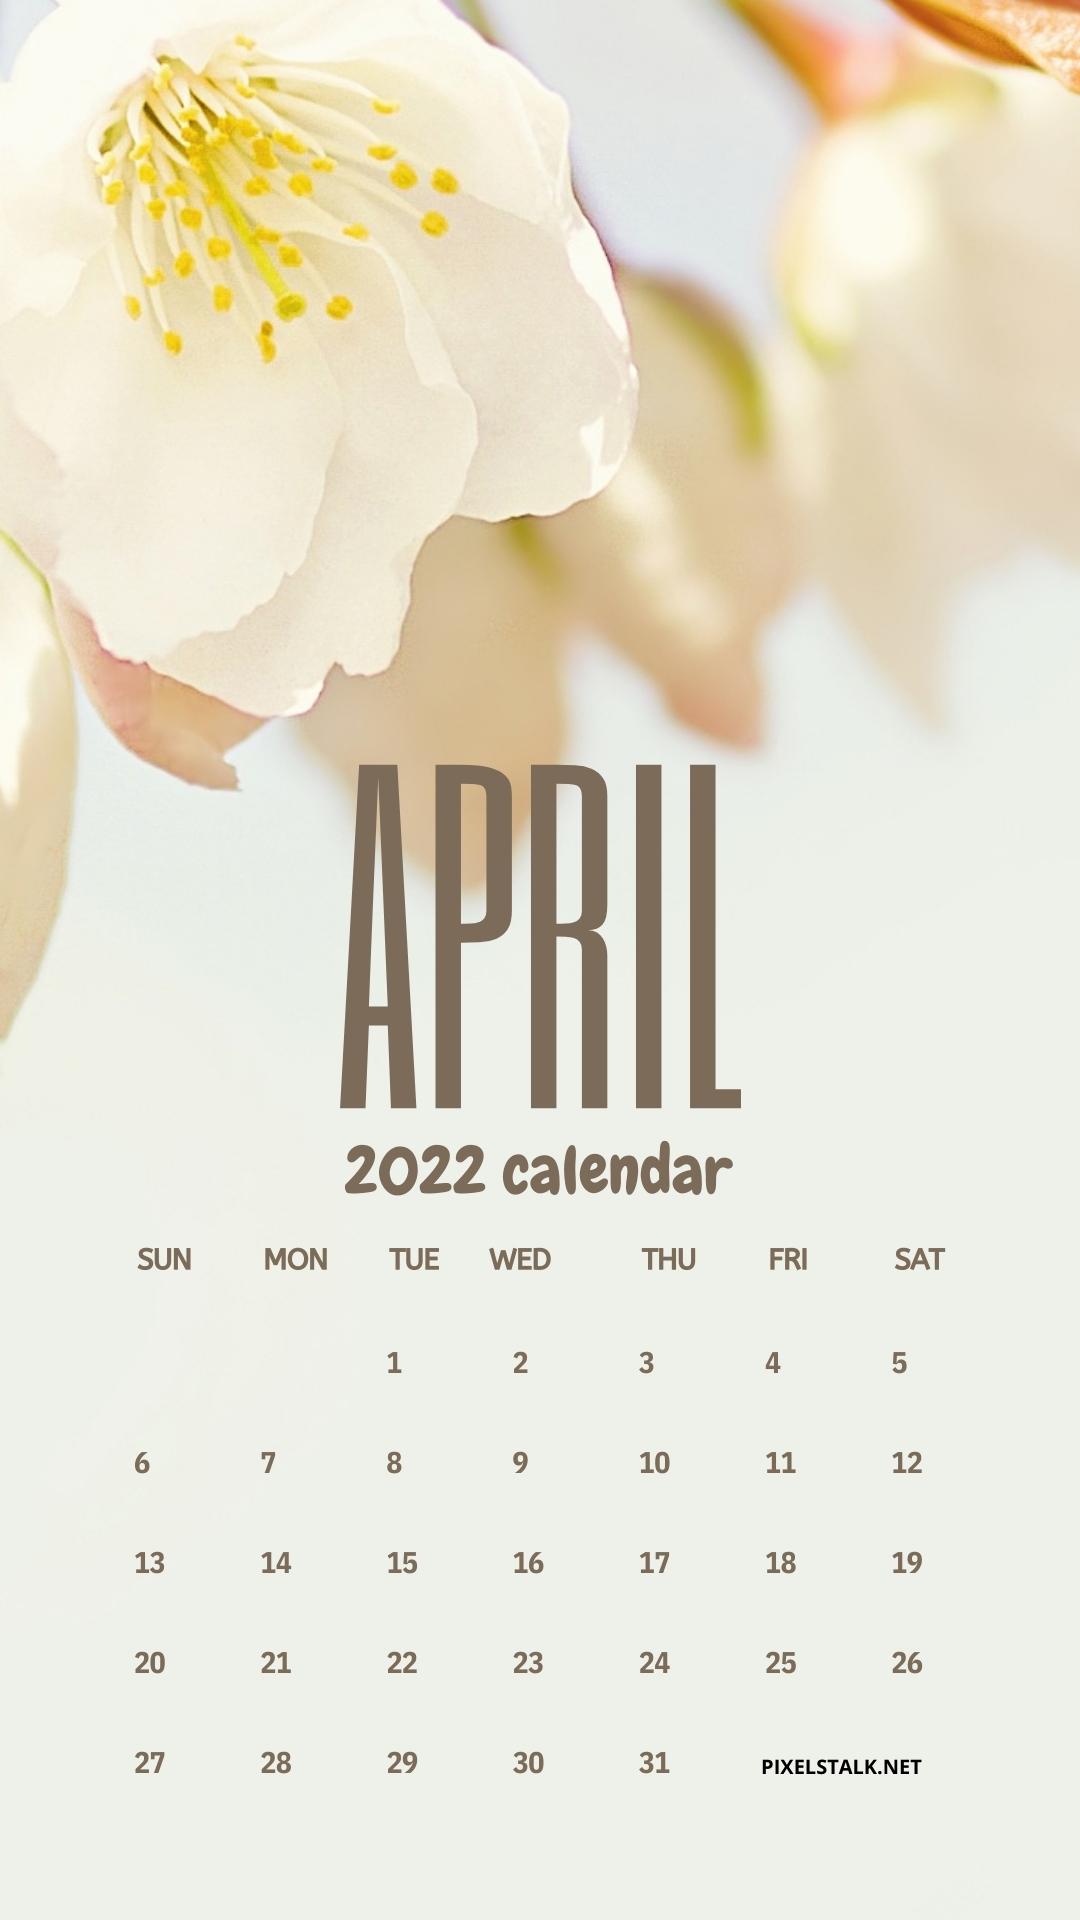 April 2022 Calendar iPhone Wallpapers 